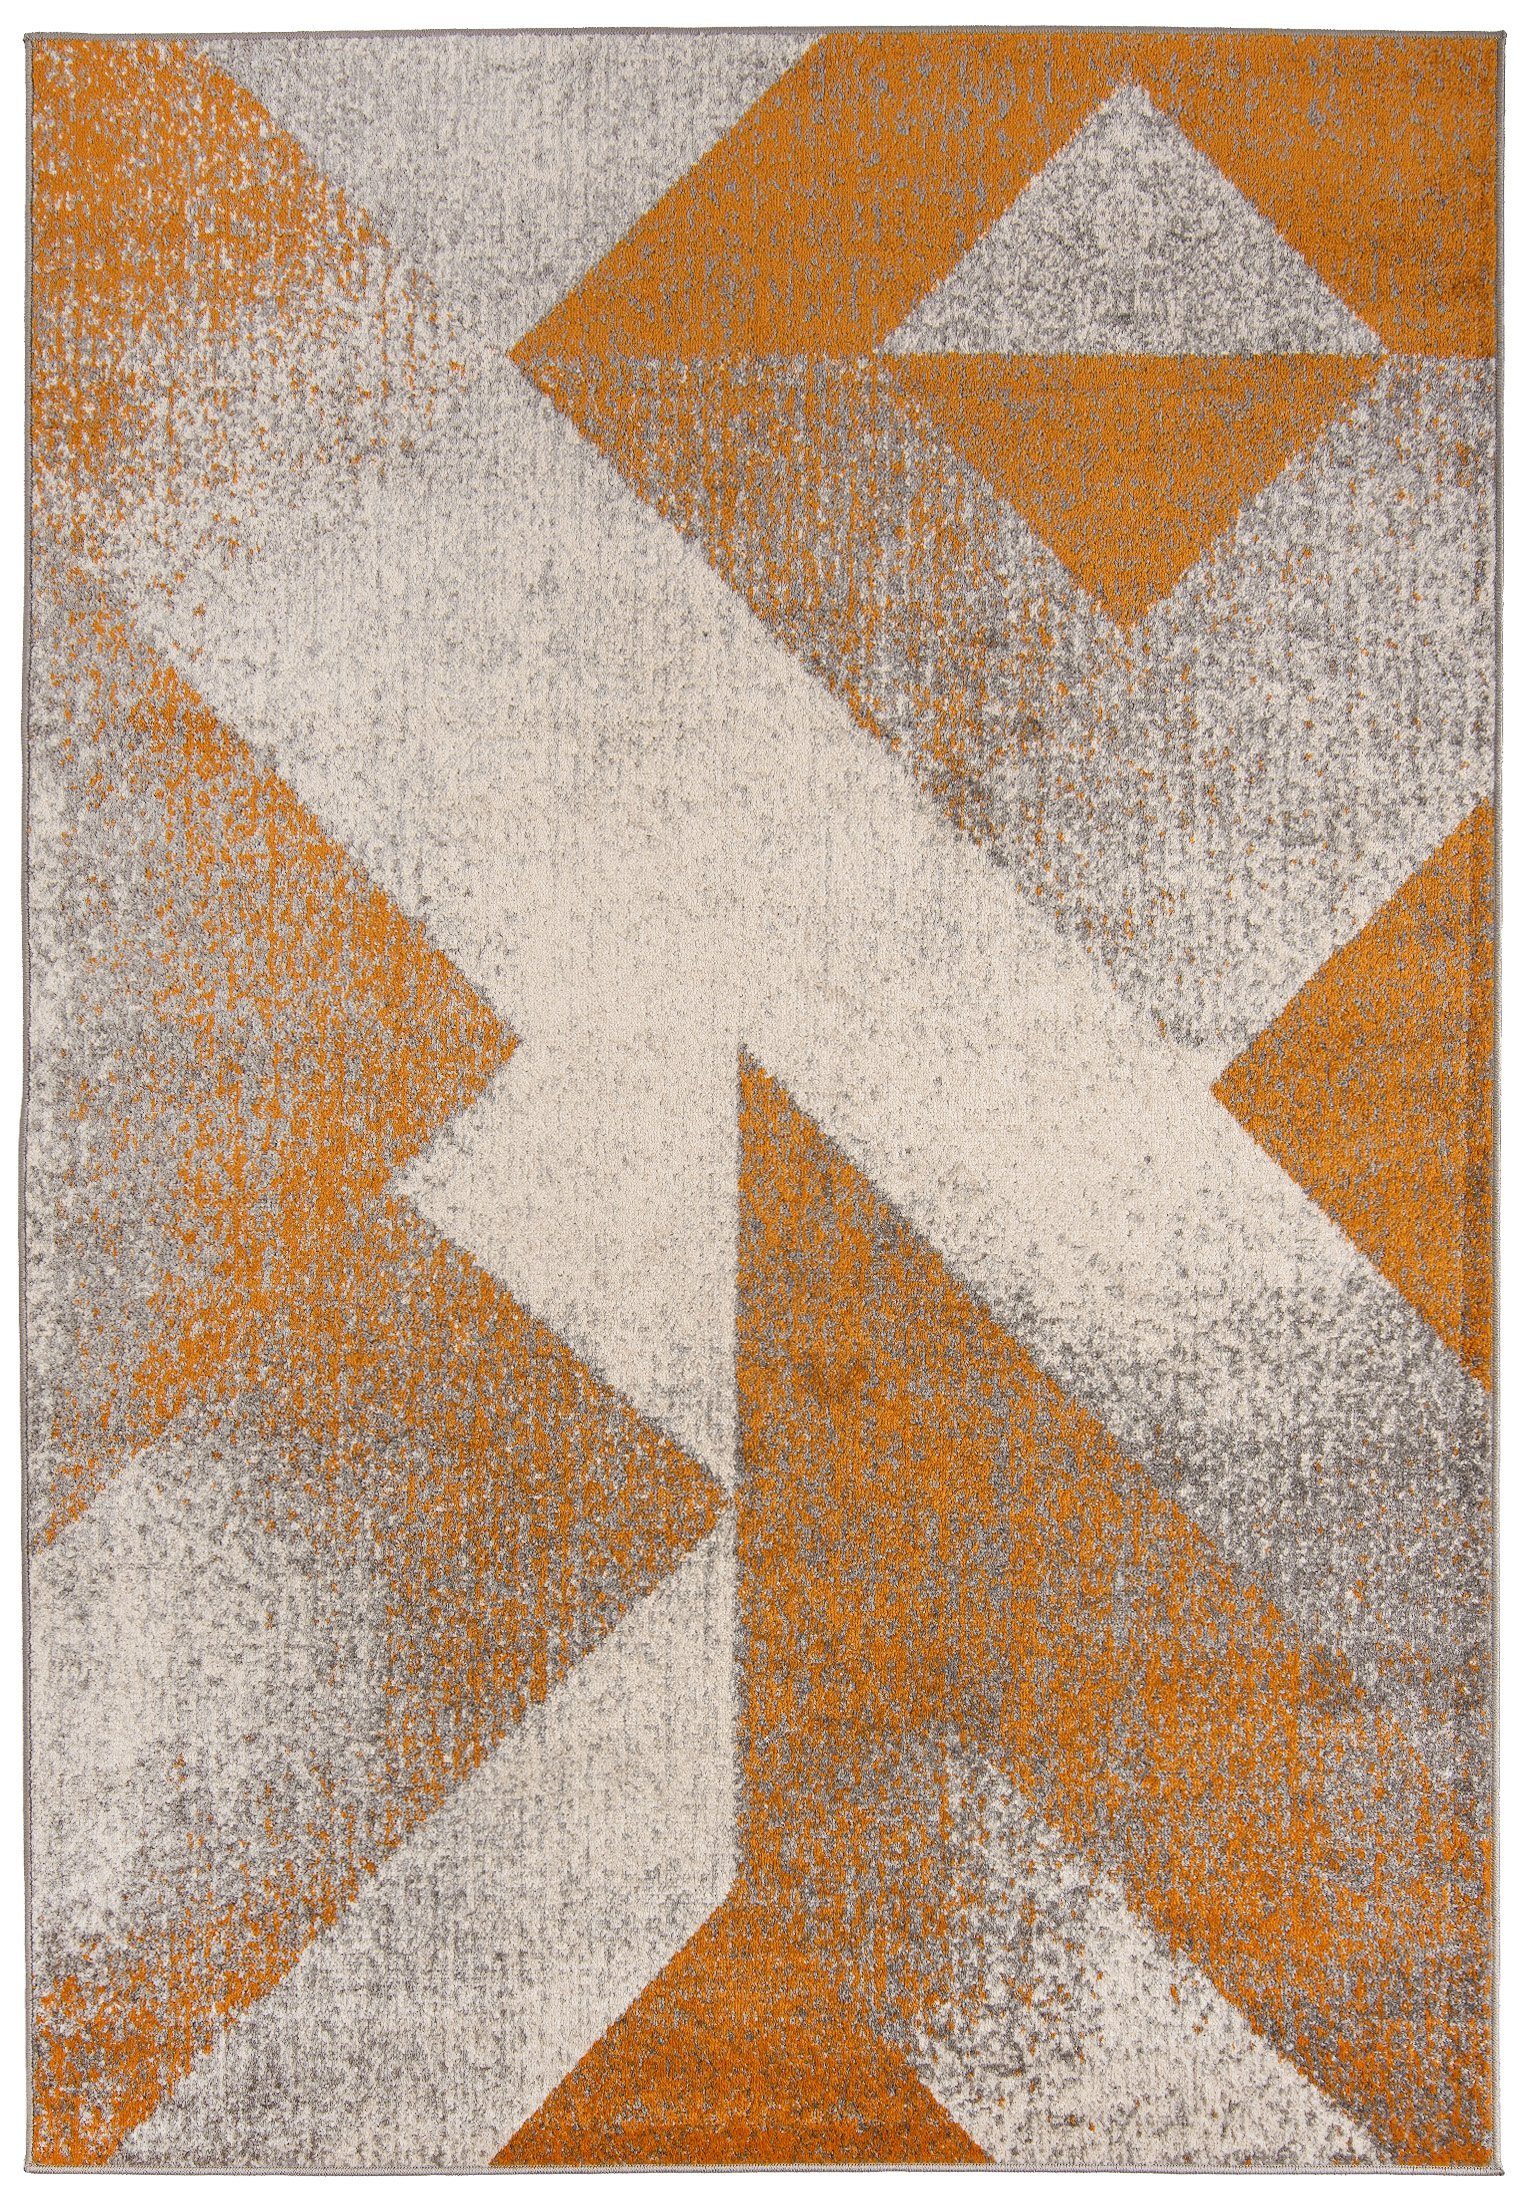 Designteppich Modern Teppich Geometrisch Muster Orange Grau farbe - Kurzflor, Mazovia, 120 x 170 cm, Geeignet für Fußbodenheizung, Höhe 7 mm, Kurzflor